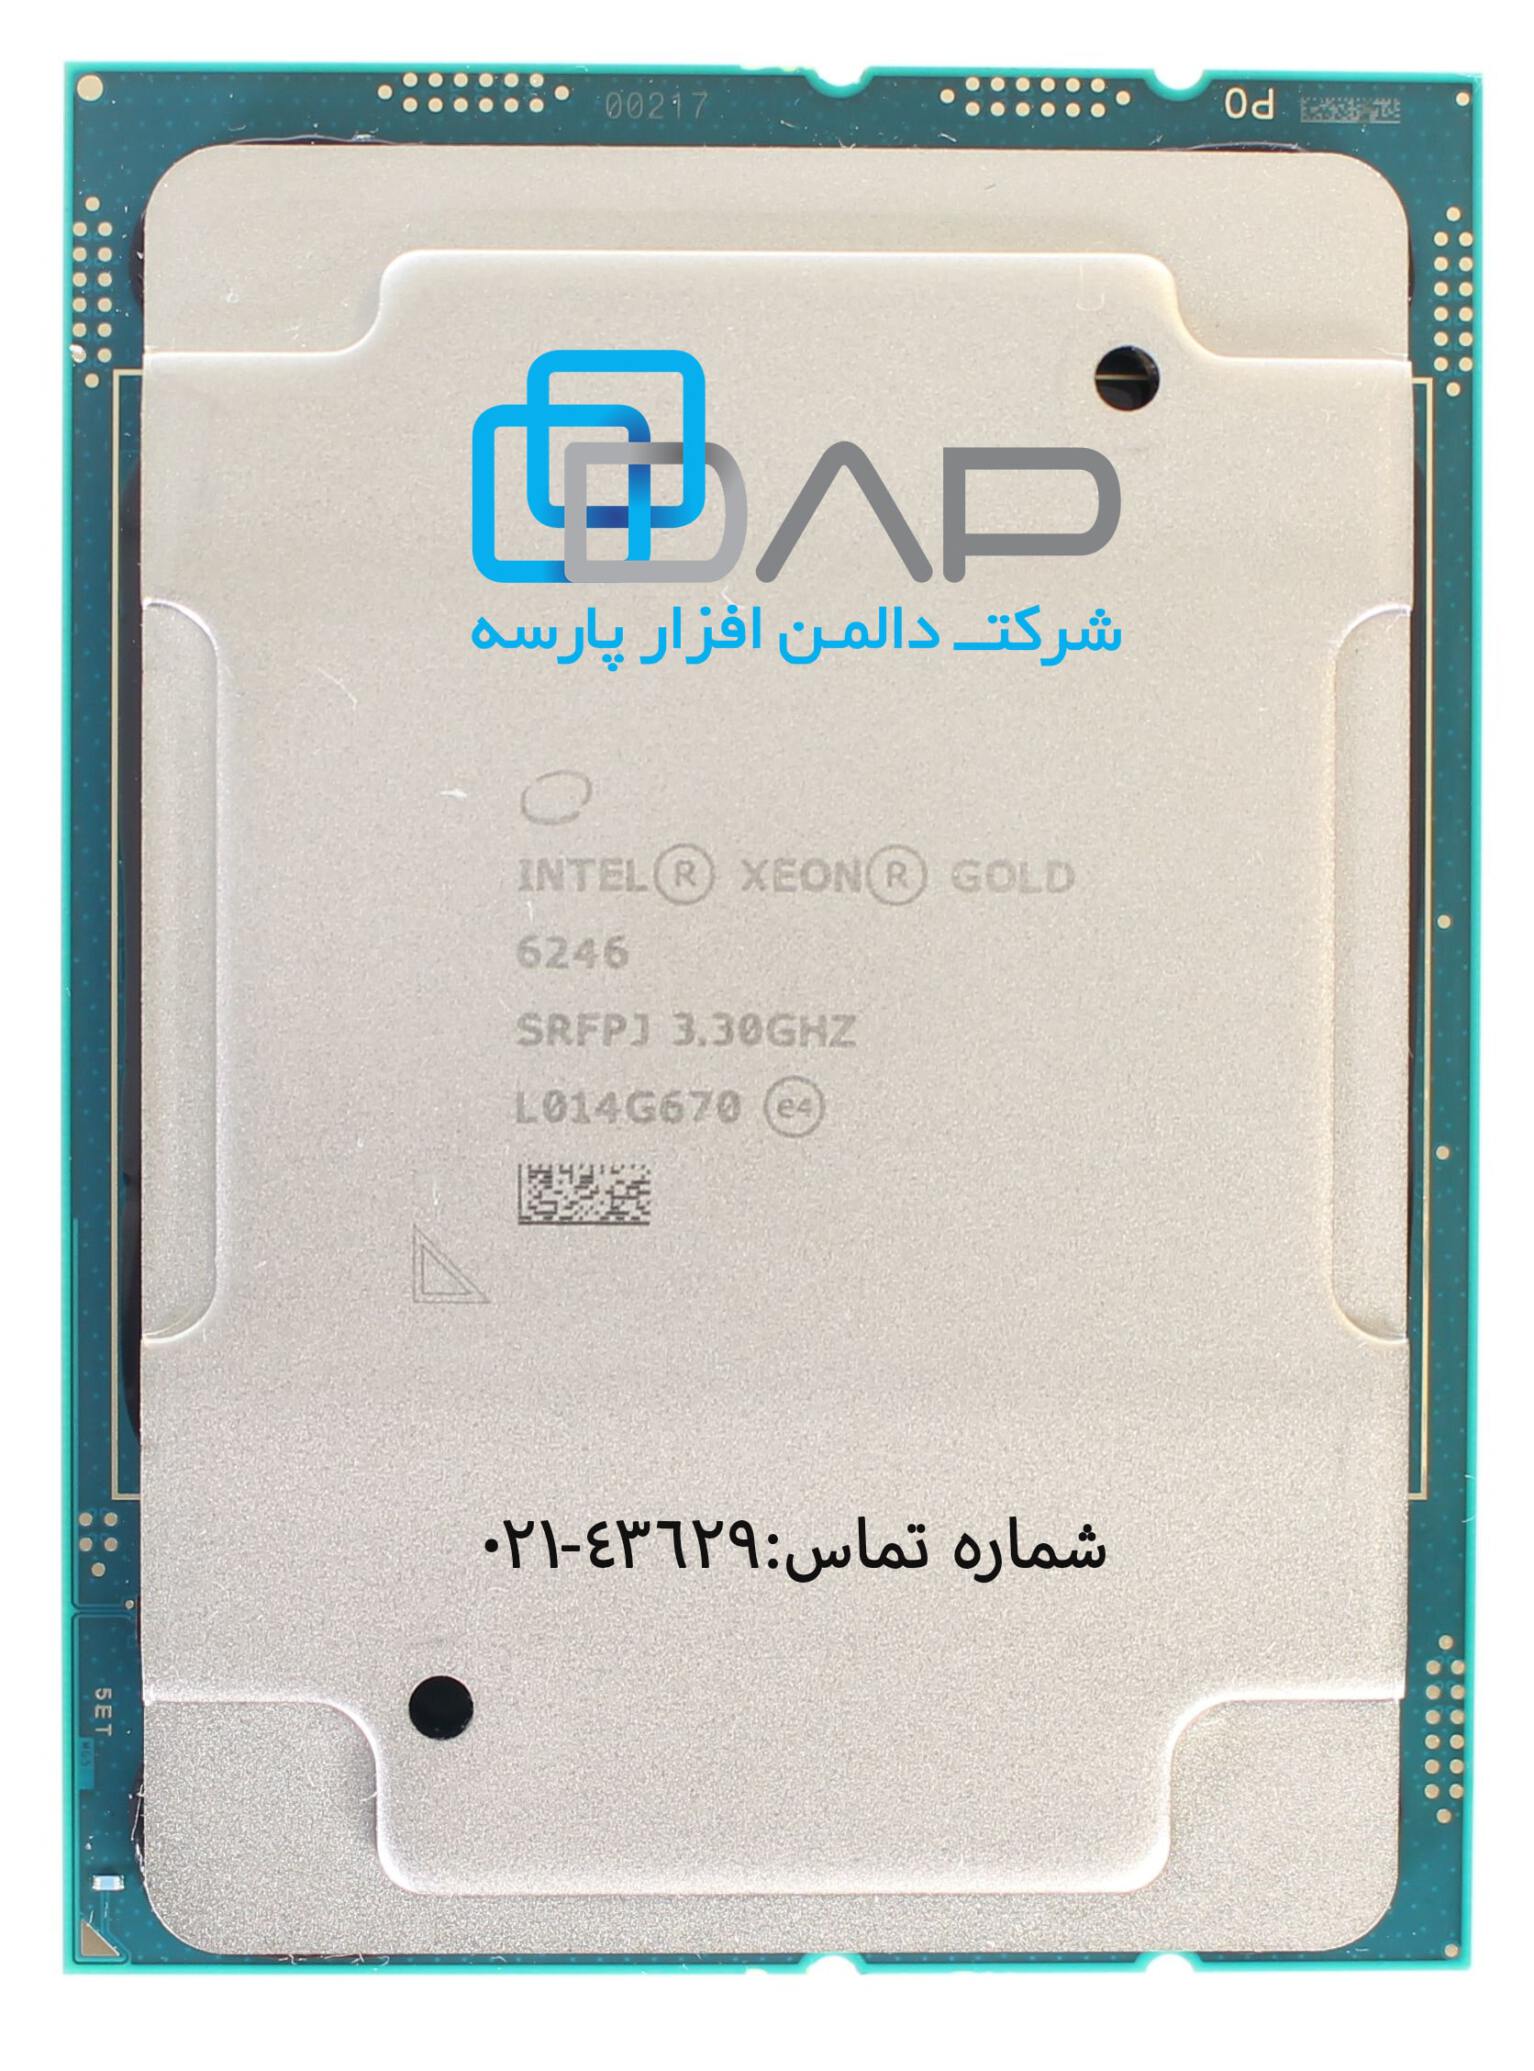  سی پی یو سرور Intel Xeon Gold 6246 